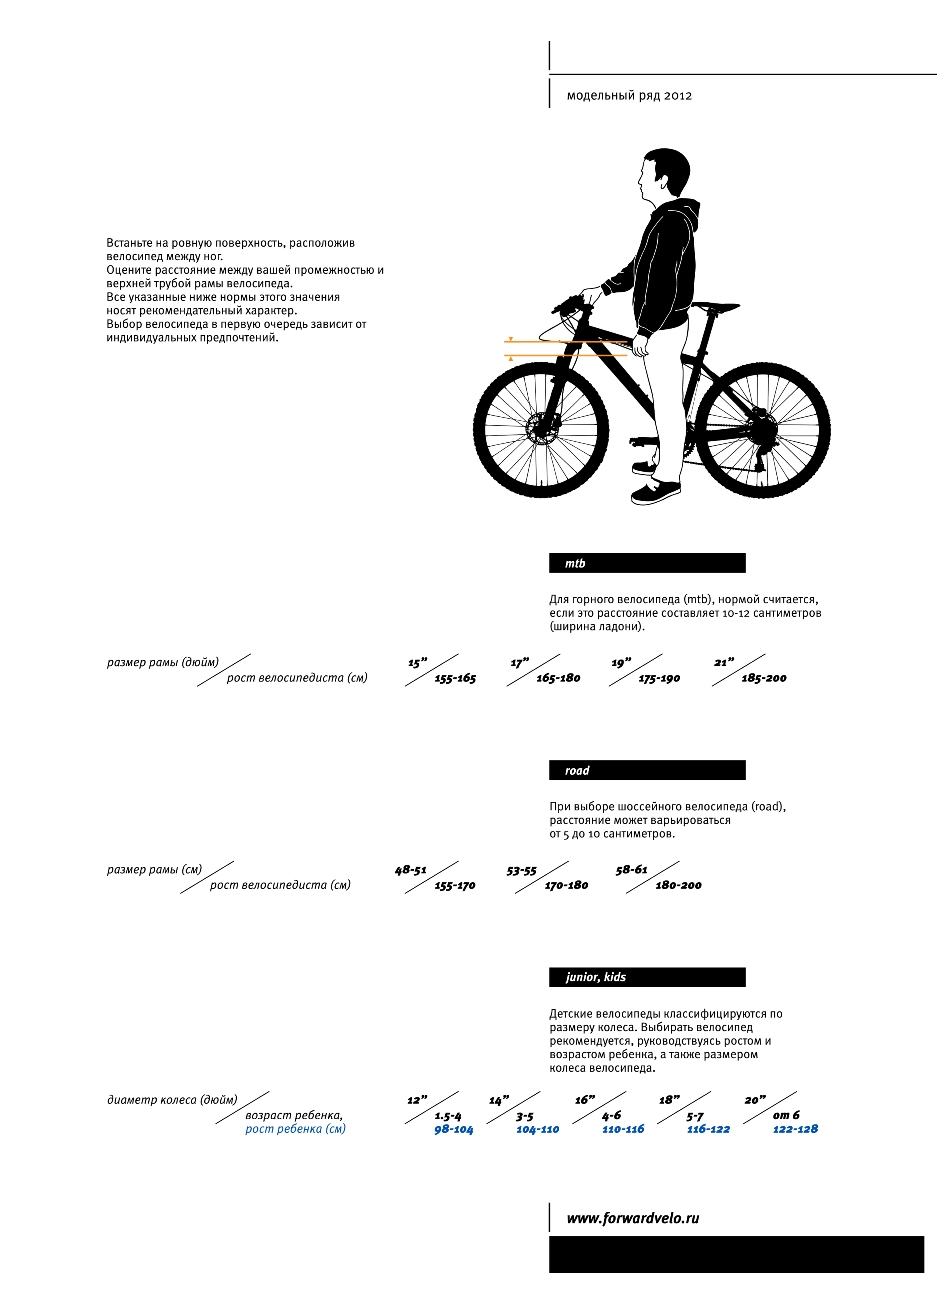 Как подобрать велосипед мужчине. Размер рамы велосипеда по росту женщина. Таблица выбора велосипеда по росту и весу. Какой размер рамы выбрать для велосипеда рост 182. Схема подбора велосипеда по росту таблица.